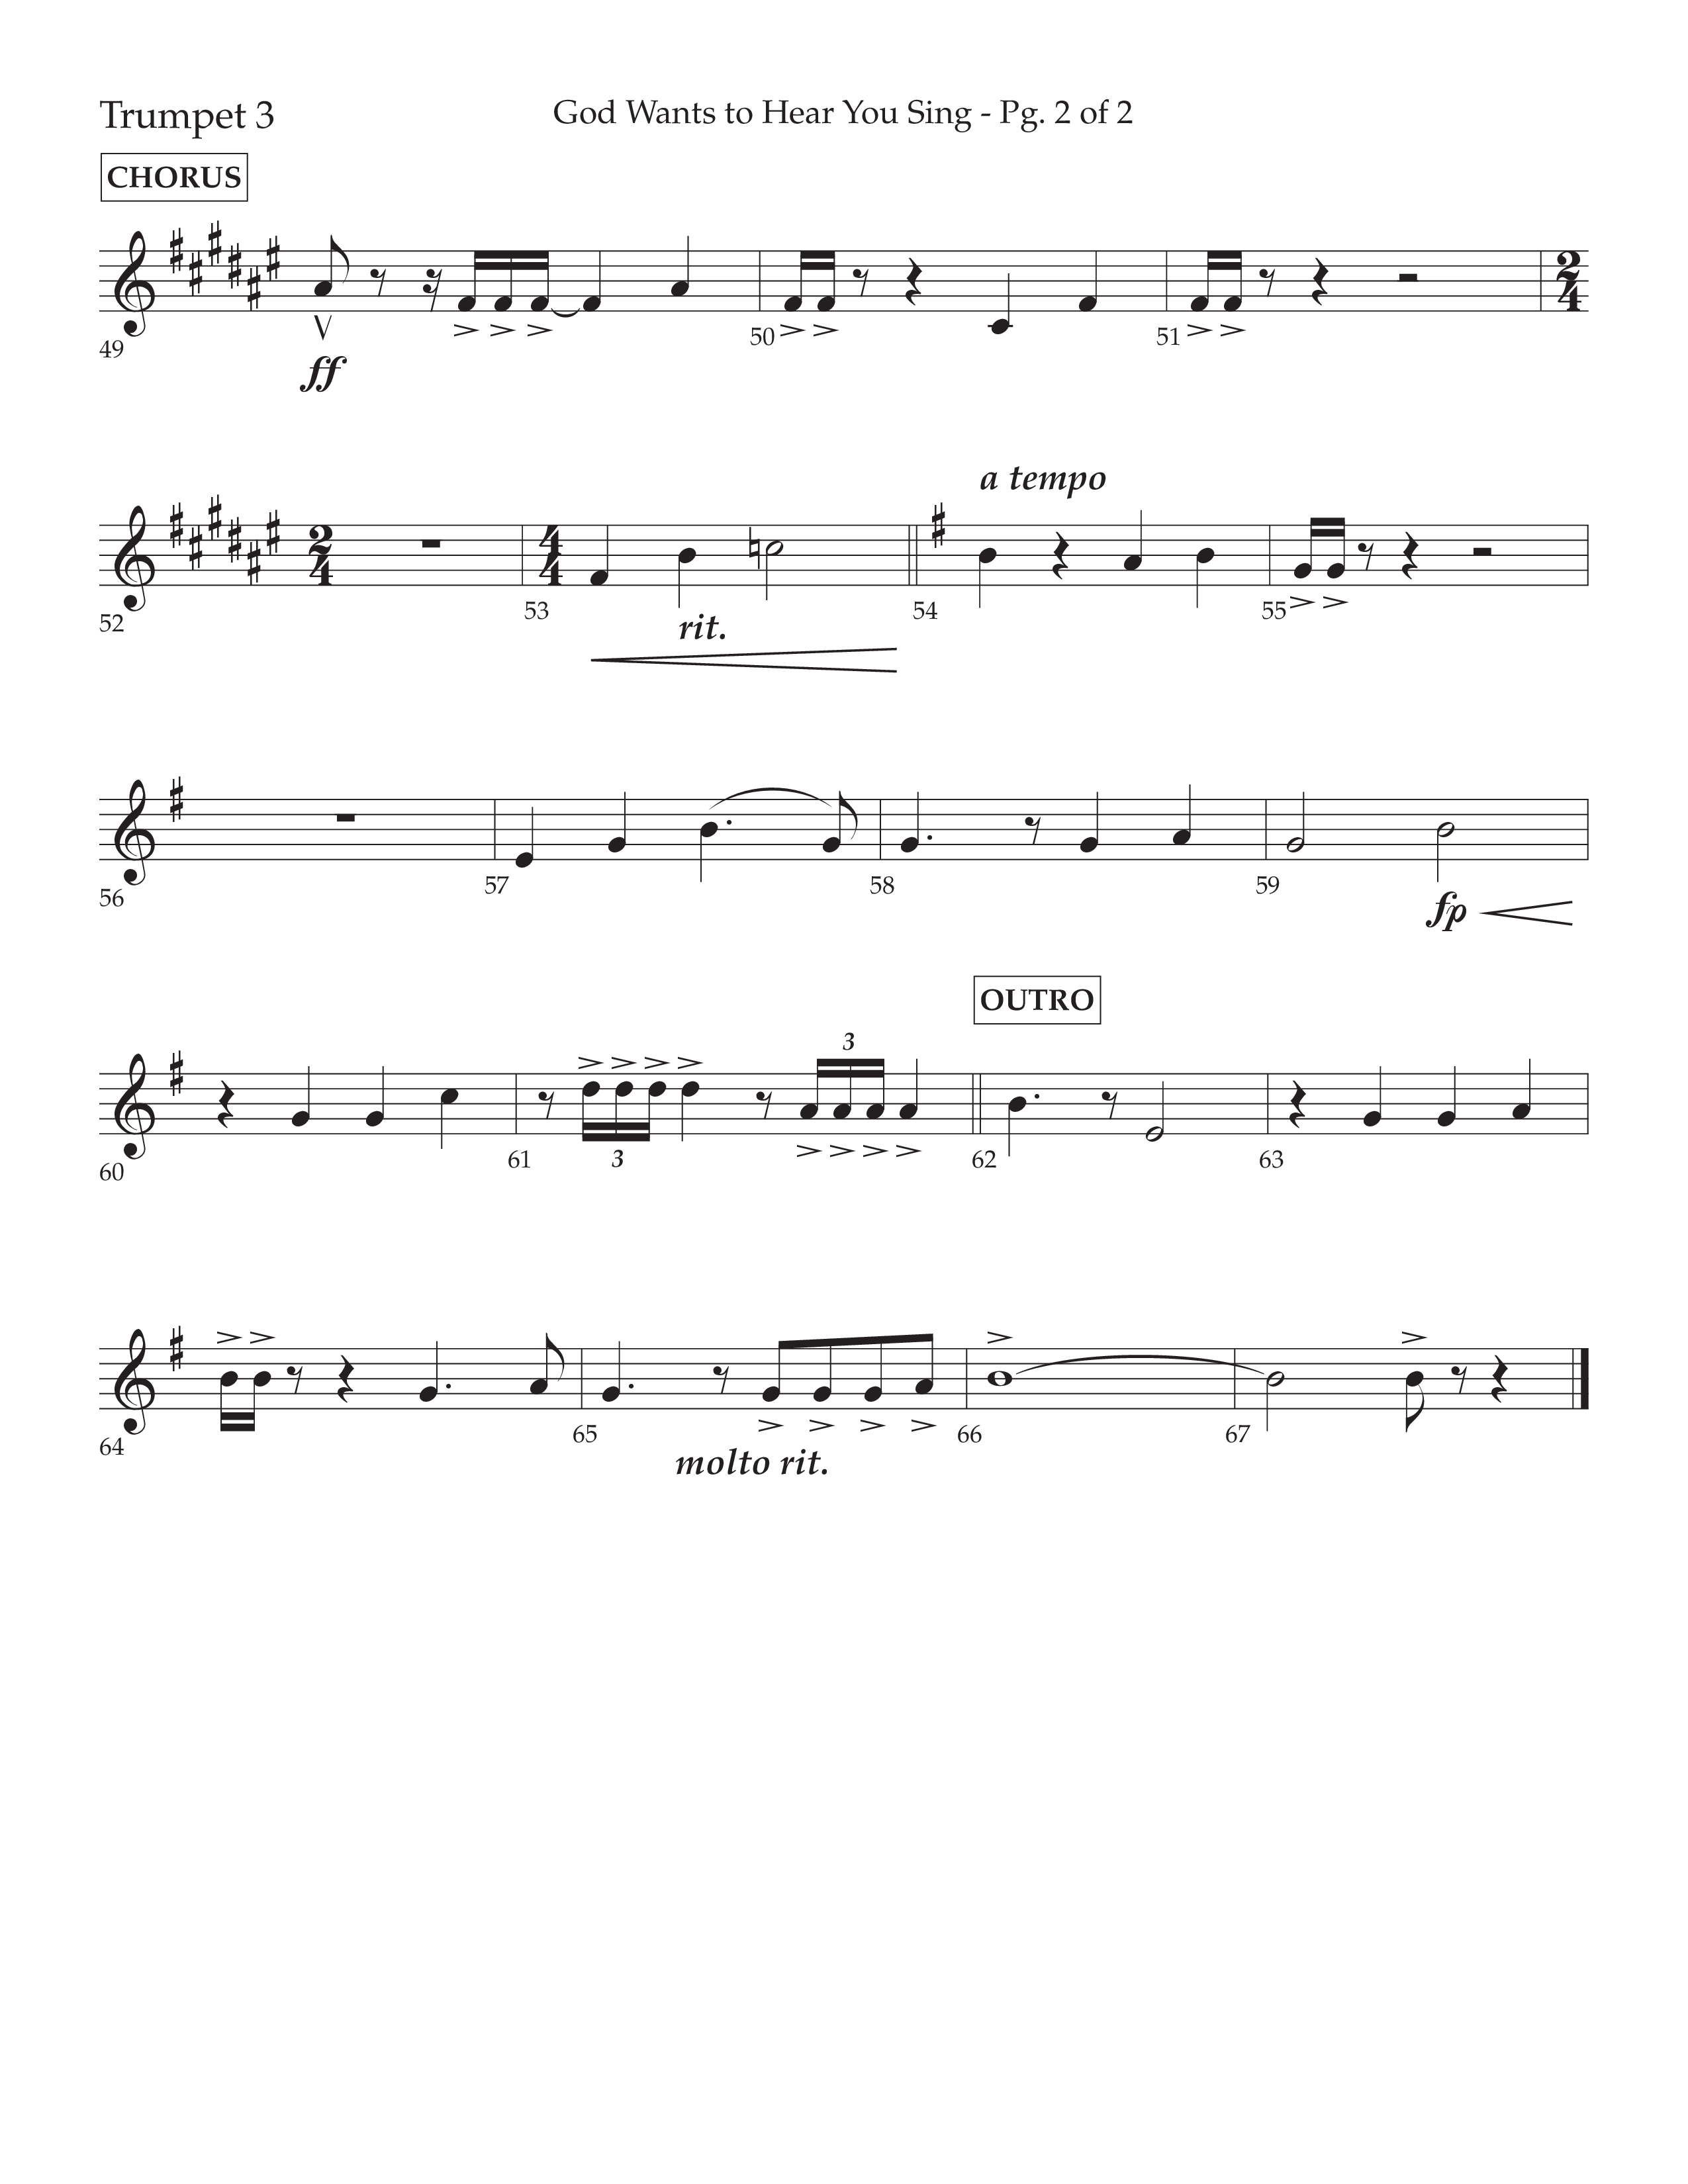 God Wants To Hear You Sing (Choral Anthem SATB) Trumpet 3 (Lifeway Choral / Arr. Bradley Knight)